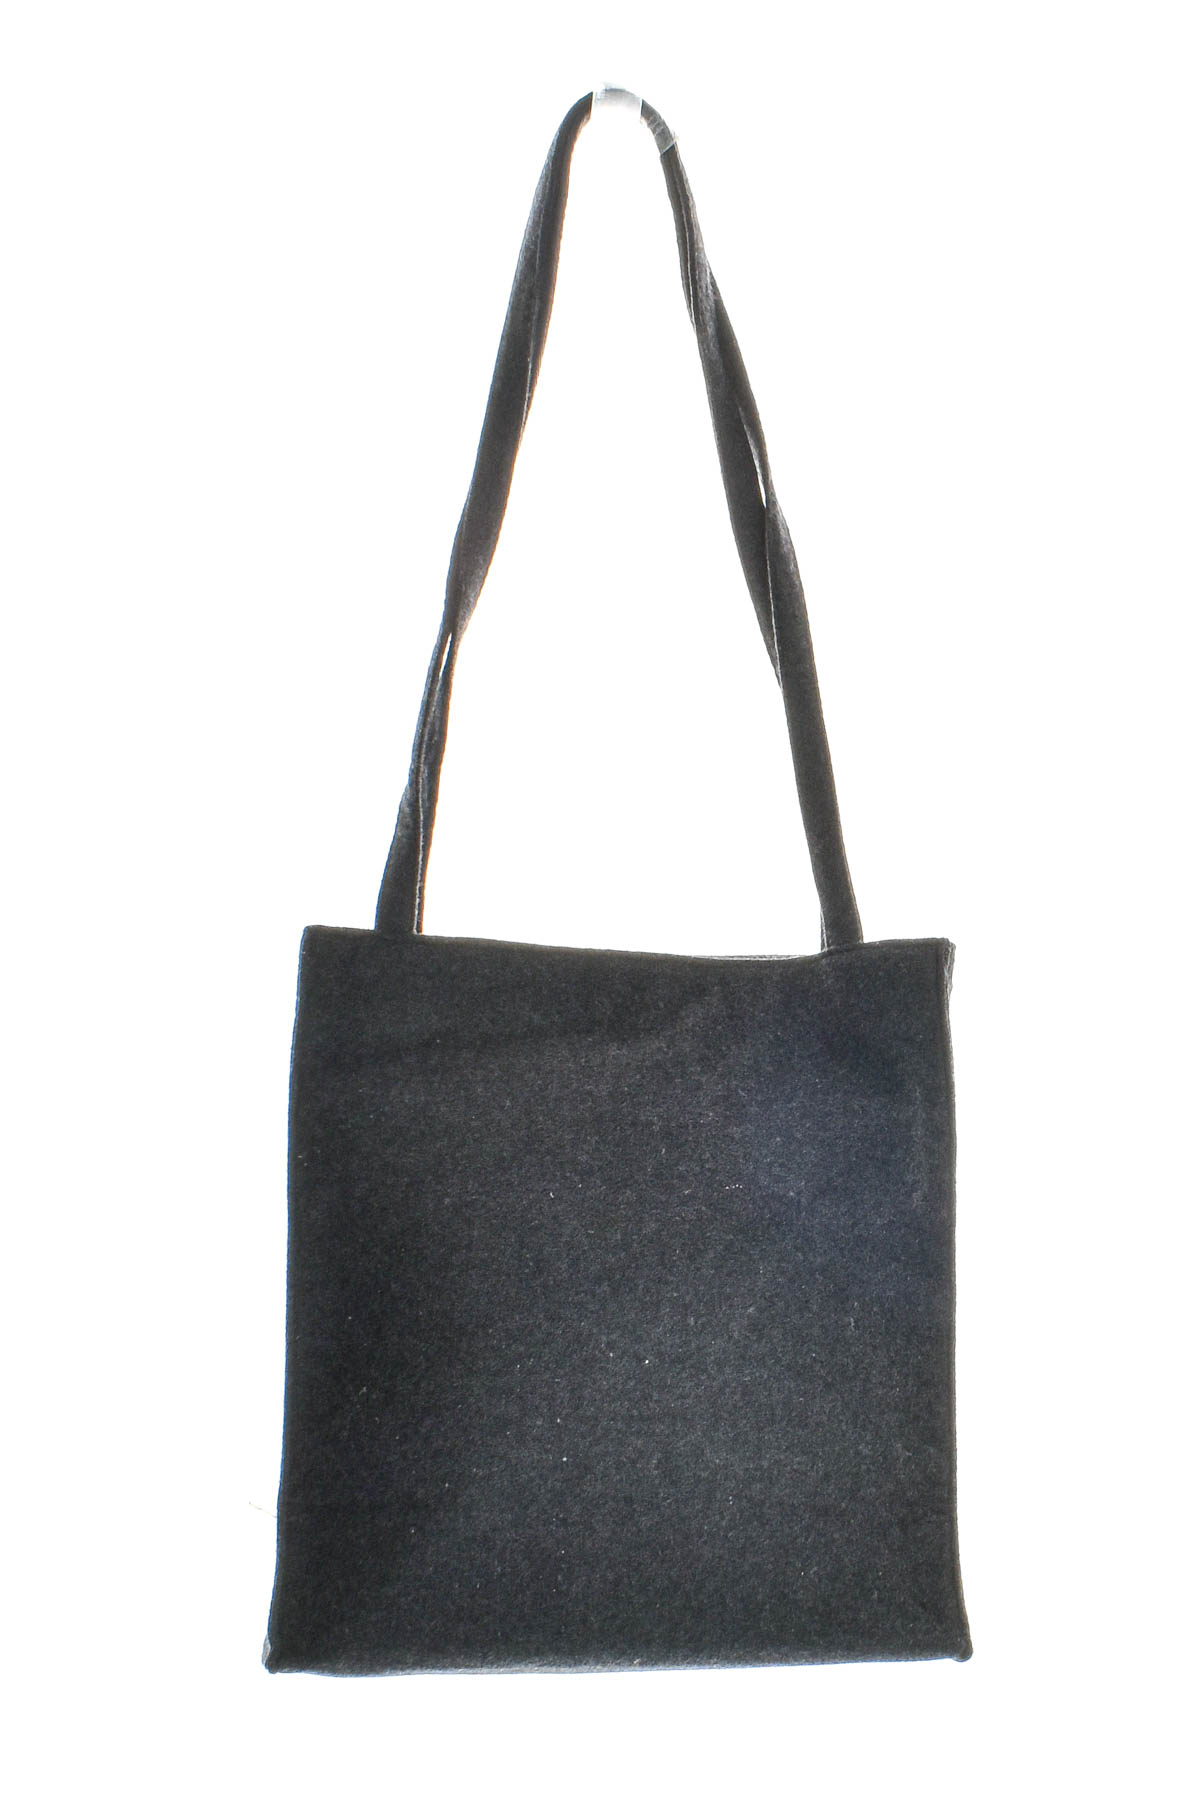 Women's bag - Fashions - 1